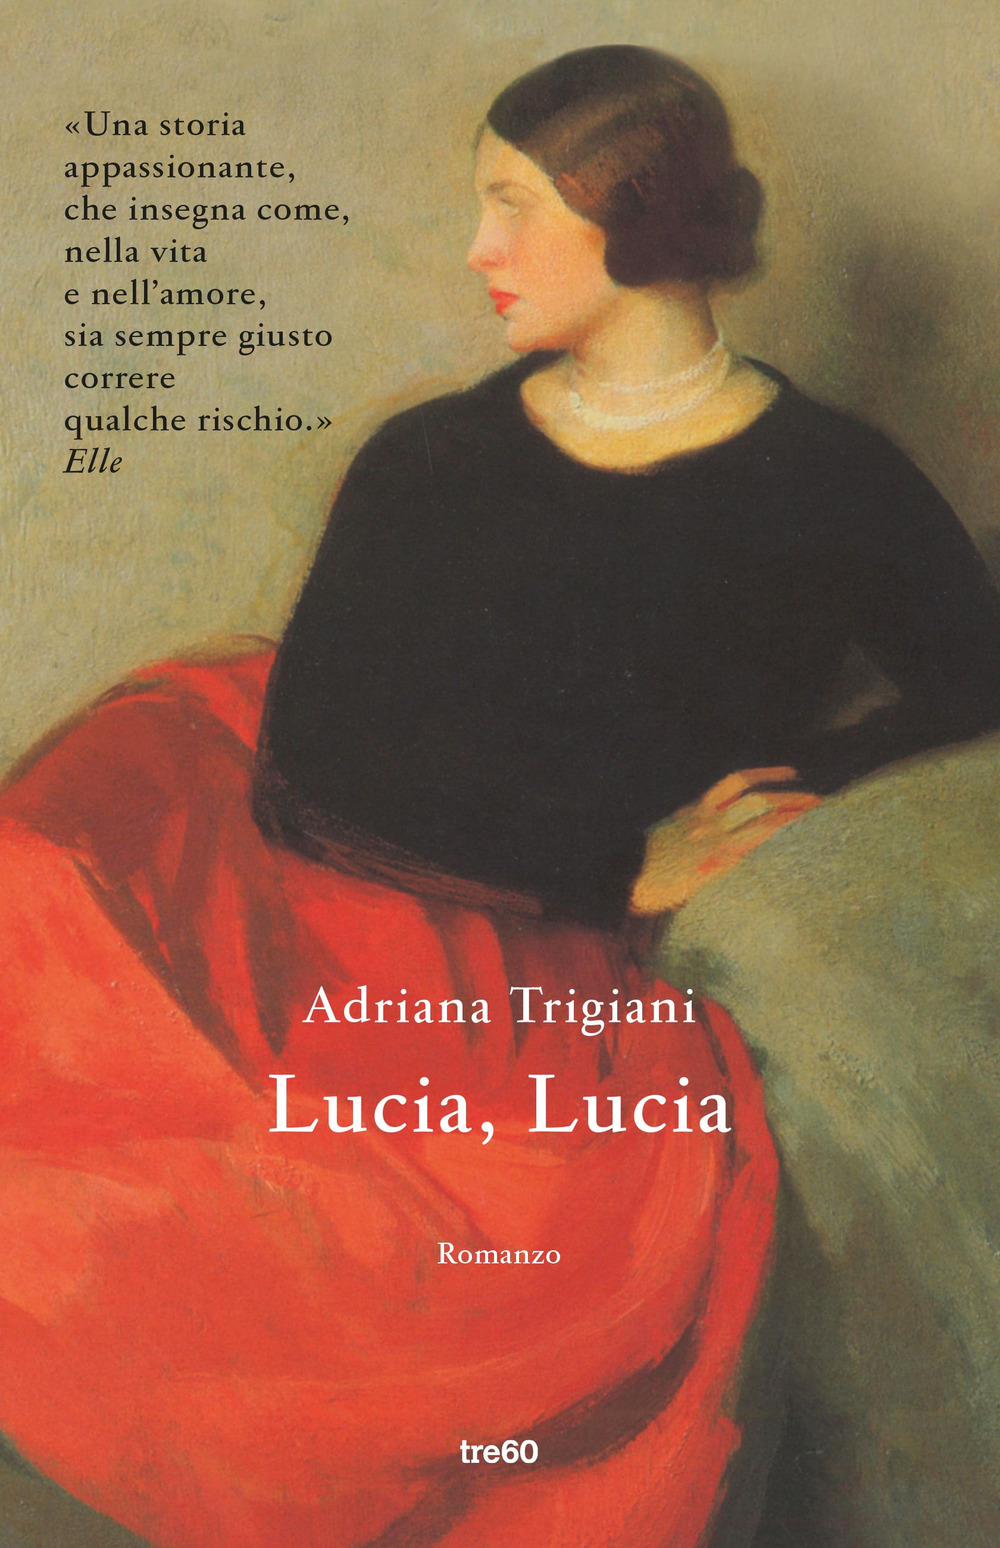 Libri Adriana Trigiani - Lucia, Lucia NUOVO SIGILLATO, EDIZIONE DEL 13/06/2019 SUBITO DISPONIBILE